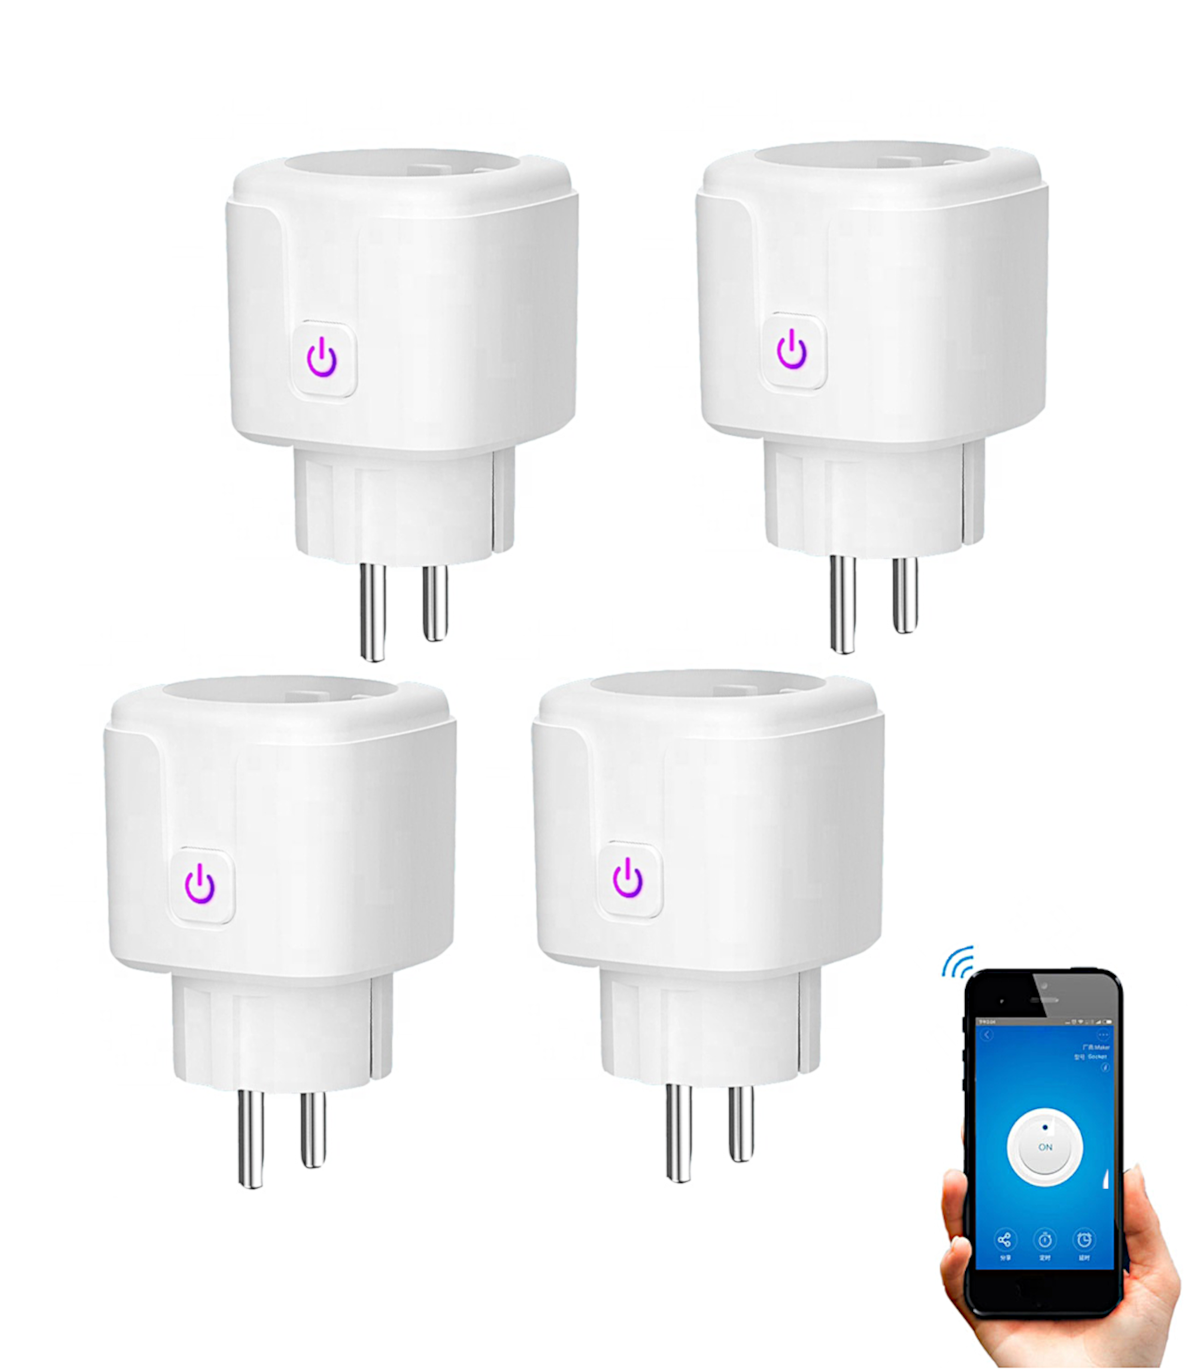 Regleta Inteligente WiFi con 4 Tomas y 4 Puertos USB - Smartfy